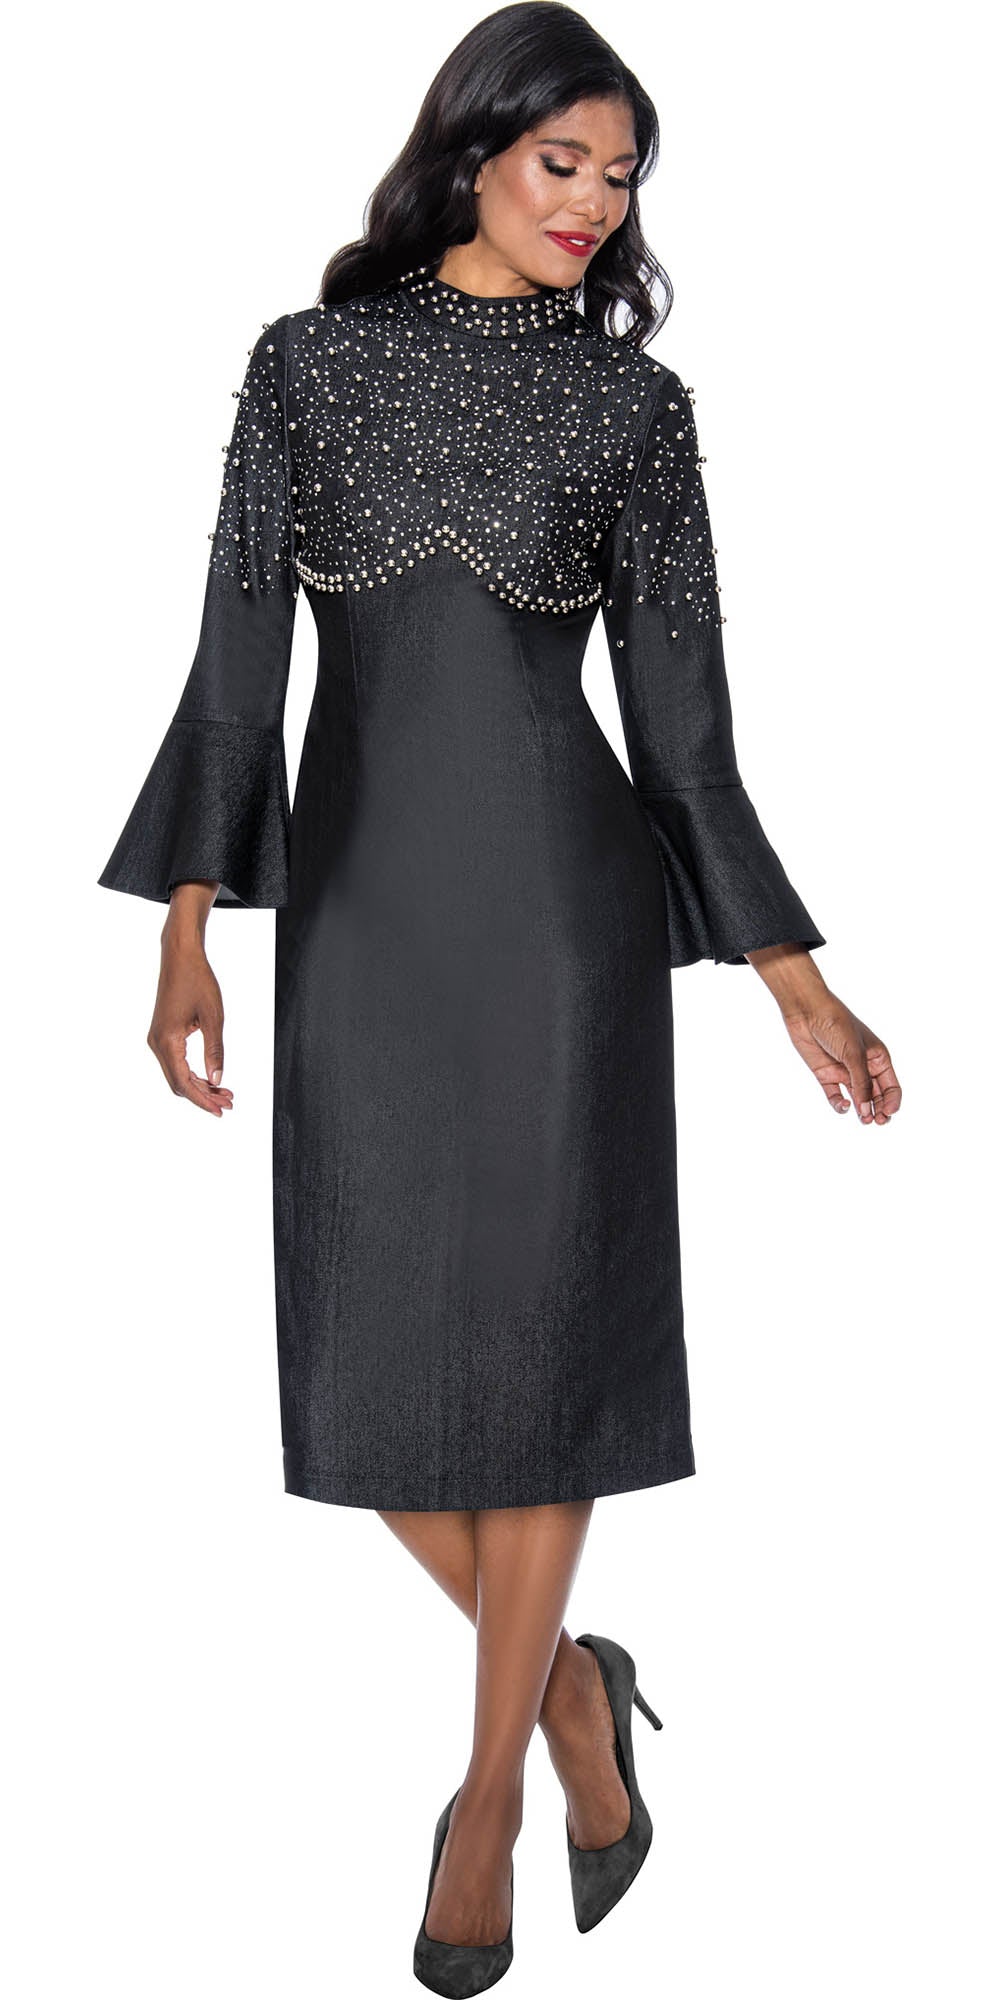 Devine Sport - 63951 - Black - Embellished Denim Dress